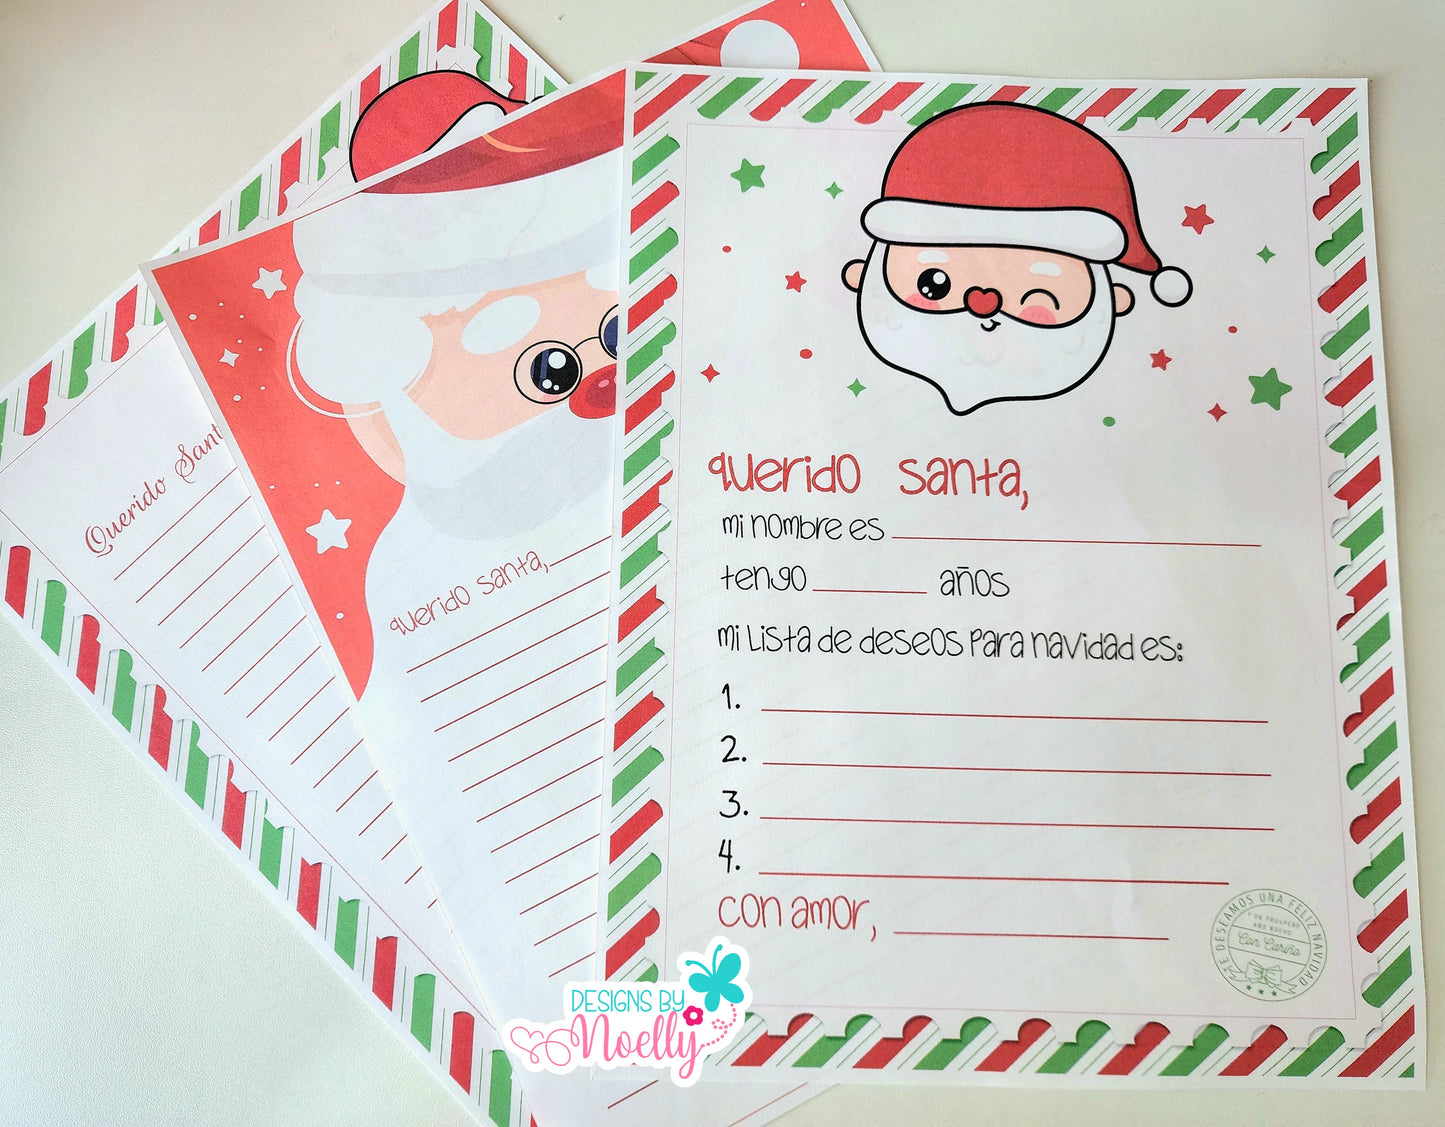 Santa's Letter Kit , Carta a Santa Kit